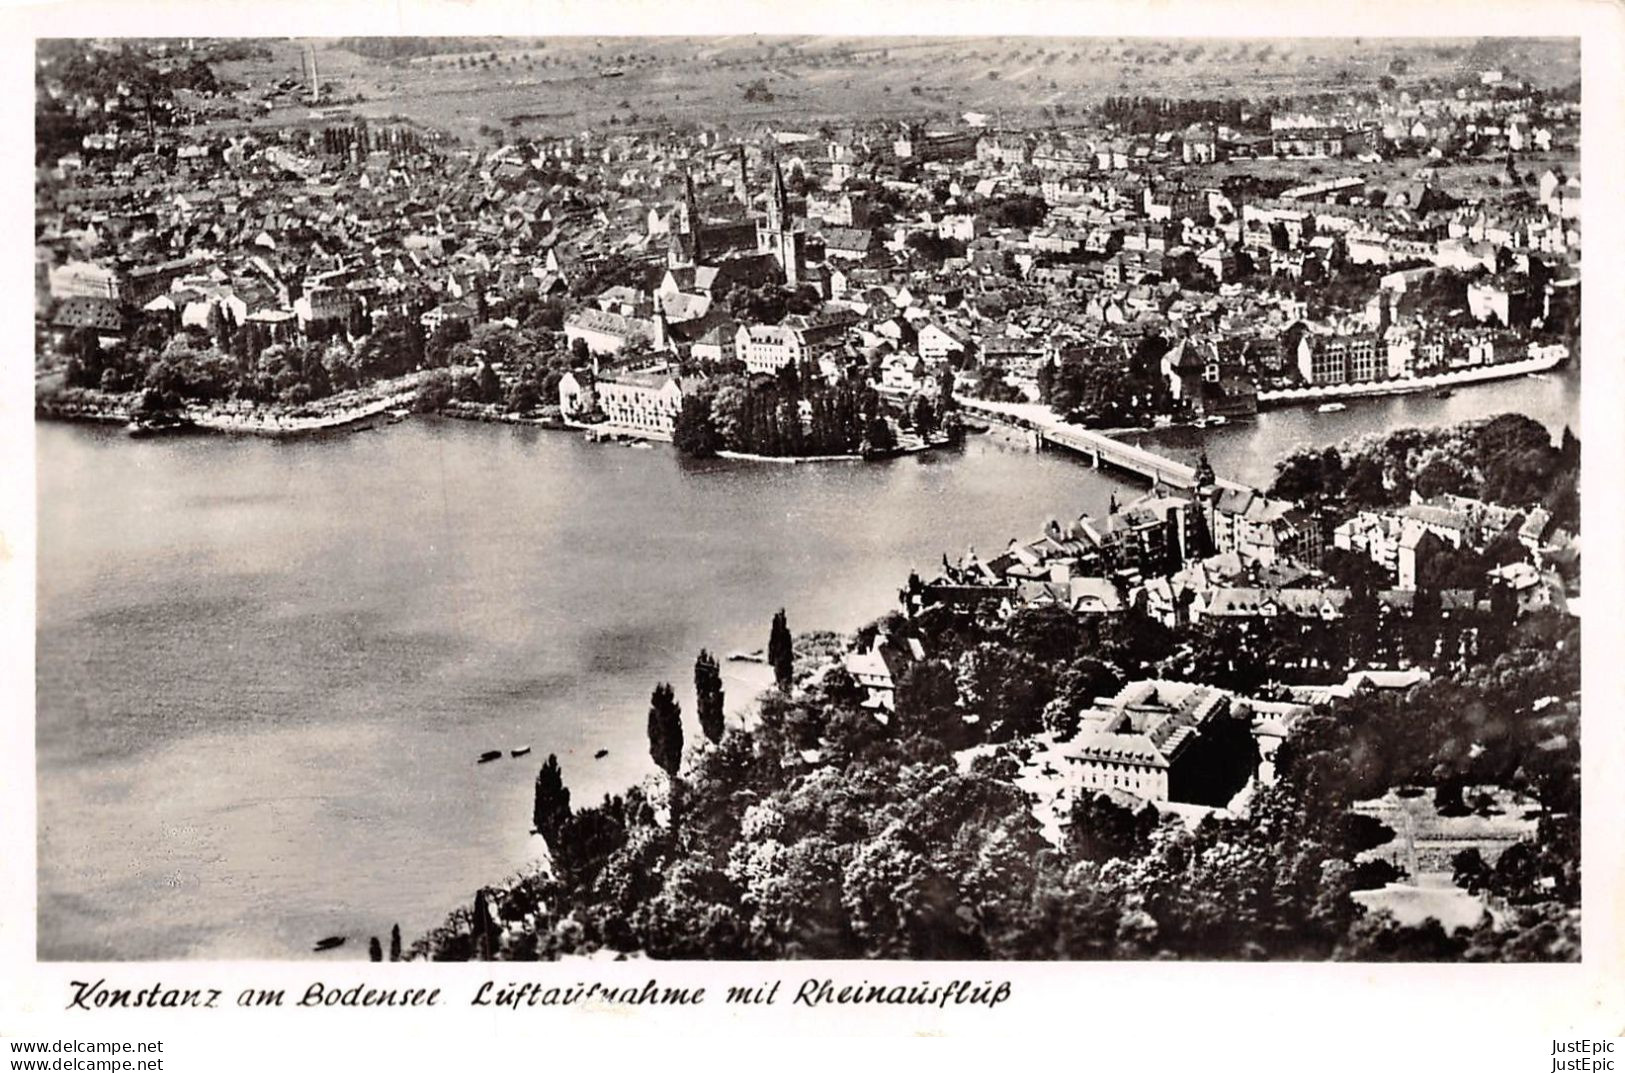 DEUTCHLAND - Konstanz am Bodensee - Luftaufnahme mit Rheinausflup CPSM ± 1950